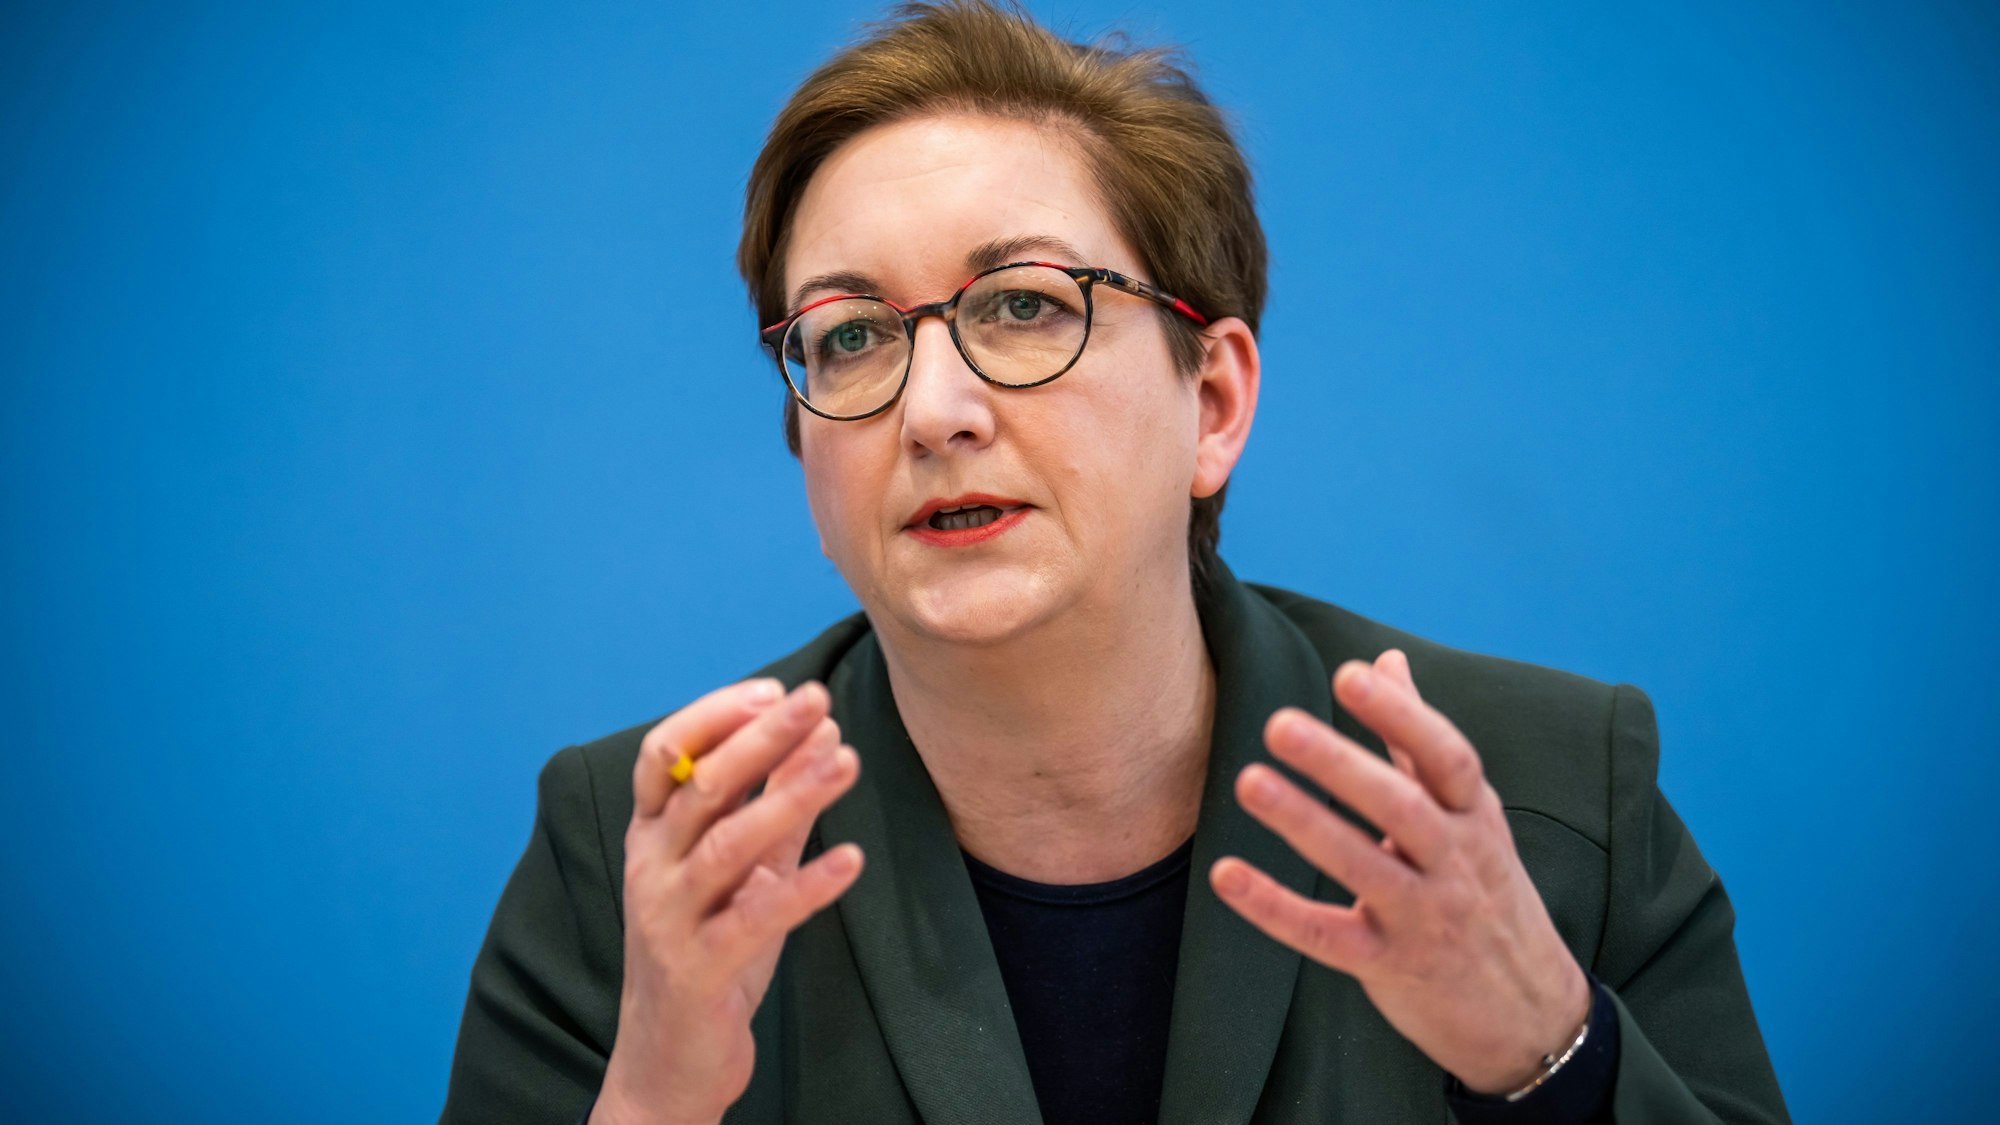 Klara Geywitz (SPD), Bundesministerin für Bau und Wohnen, spricht im Interview über die angespannte Lage im Wohnungsmarkt und welche Hebel es gibt, um die Probleme zu lösen. (Archivbild)